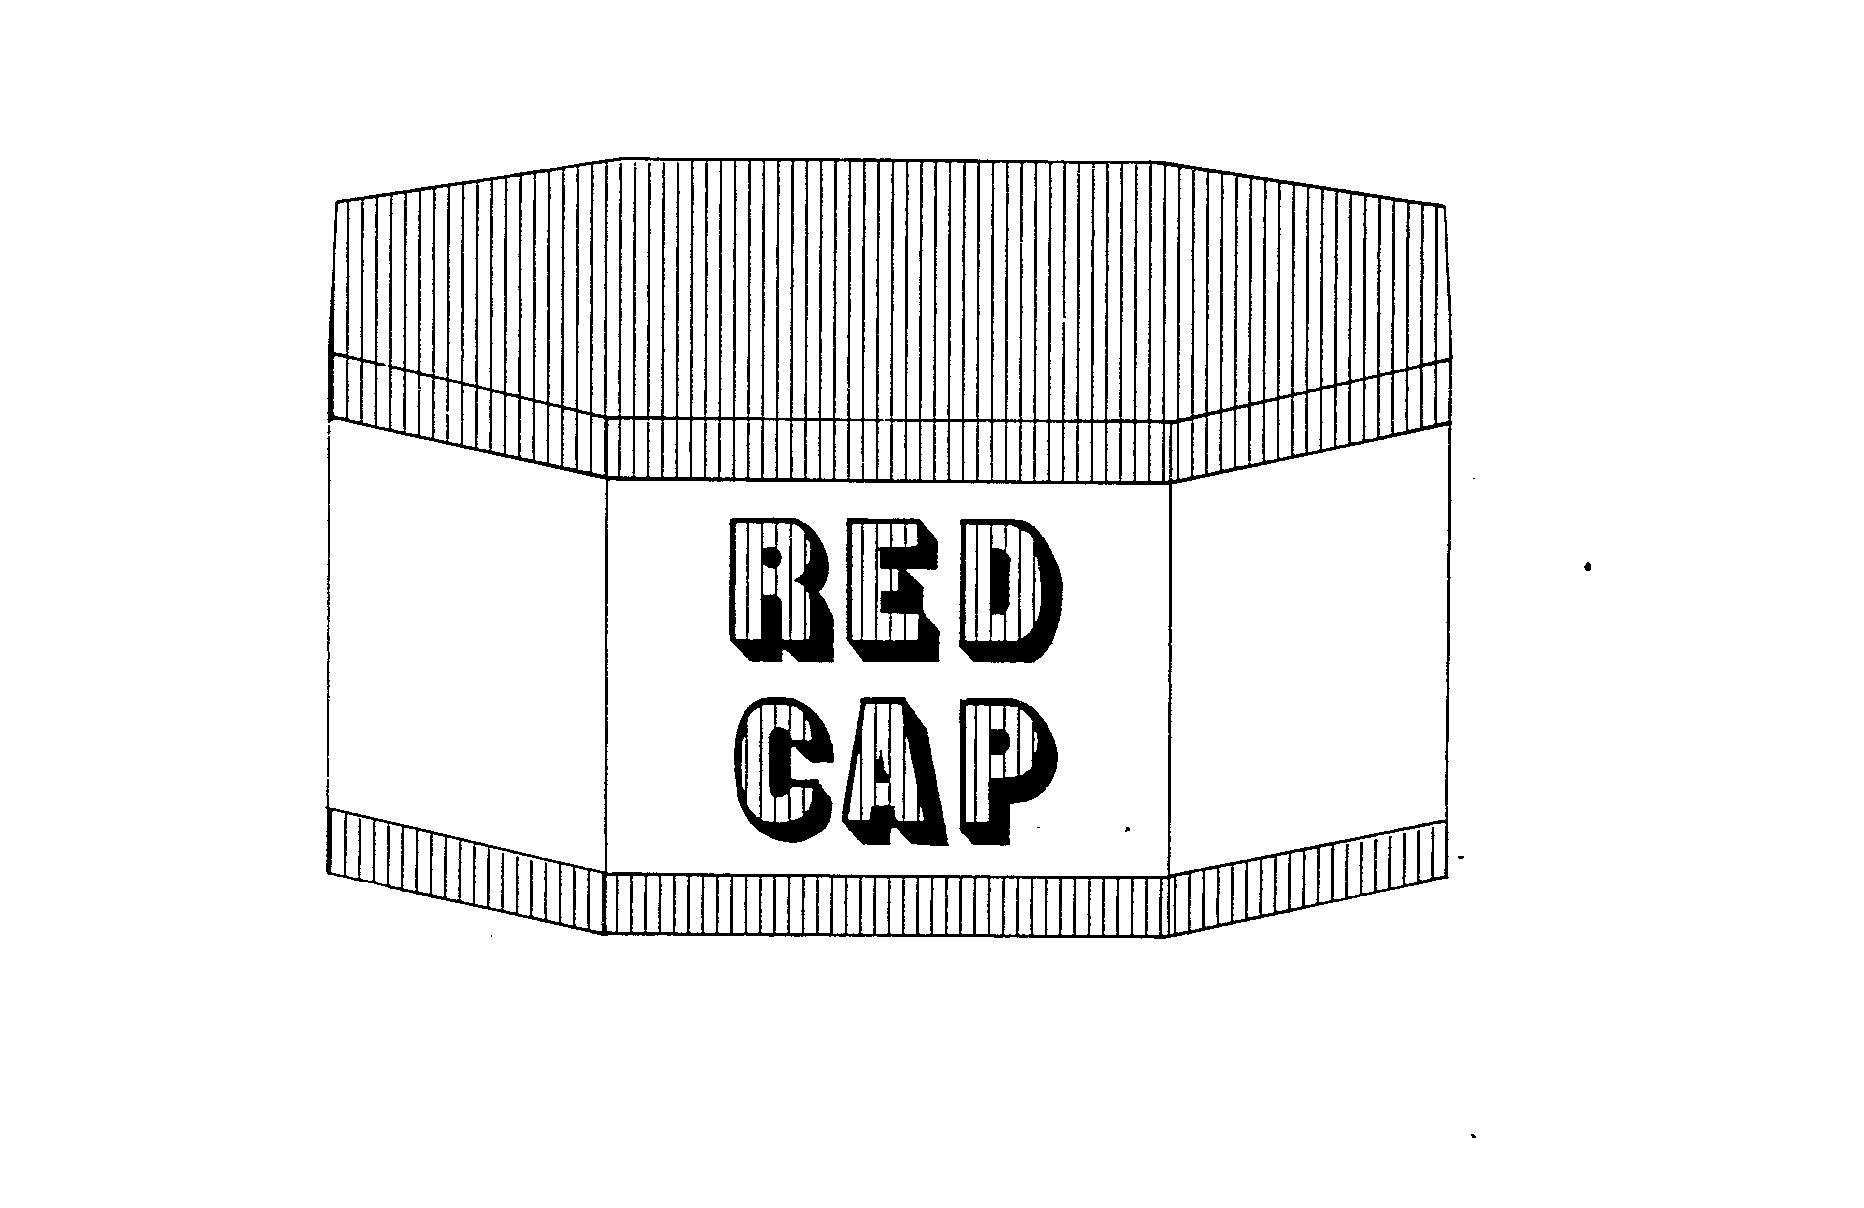 RED CAP